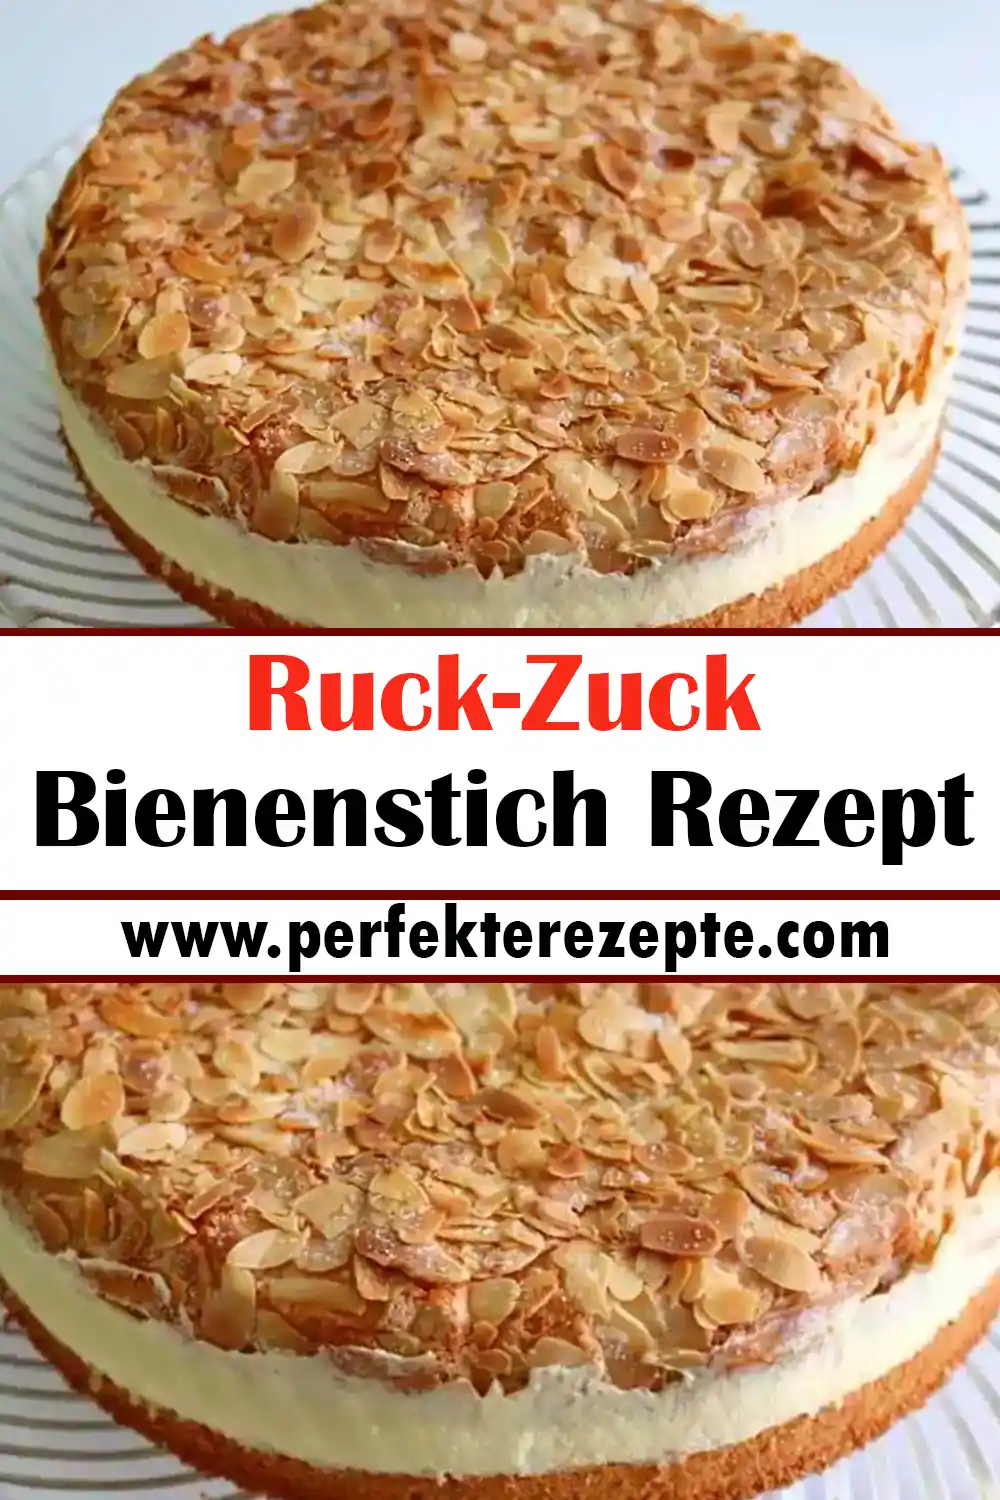 Ruck-Zuck Bienenstich Rezept